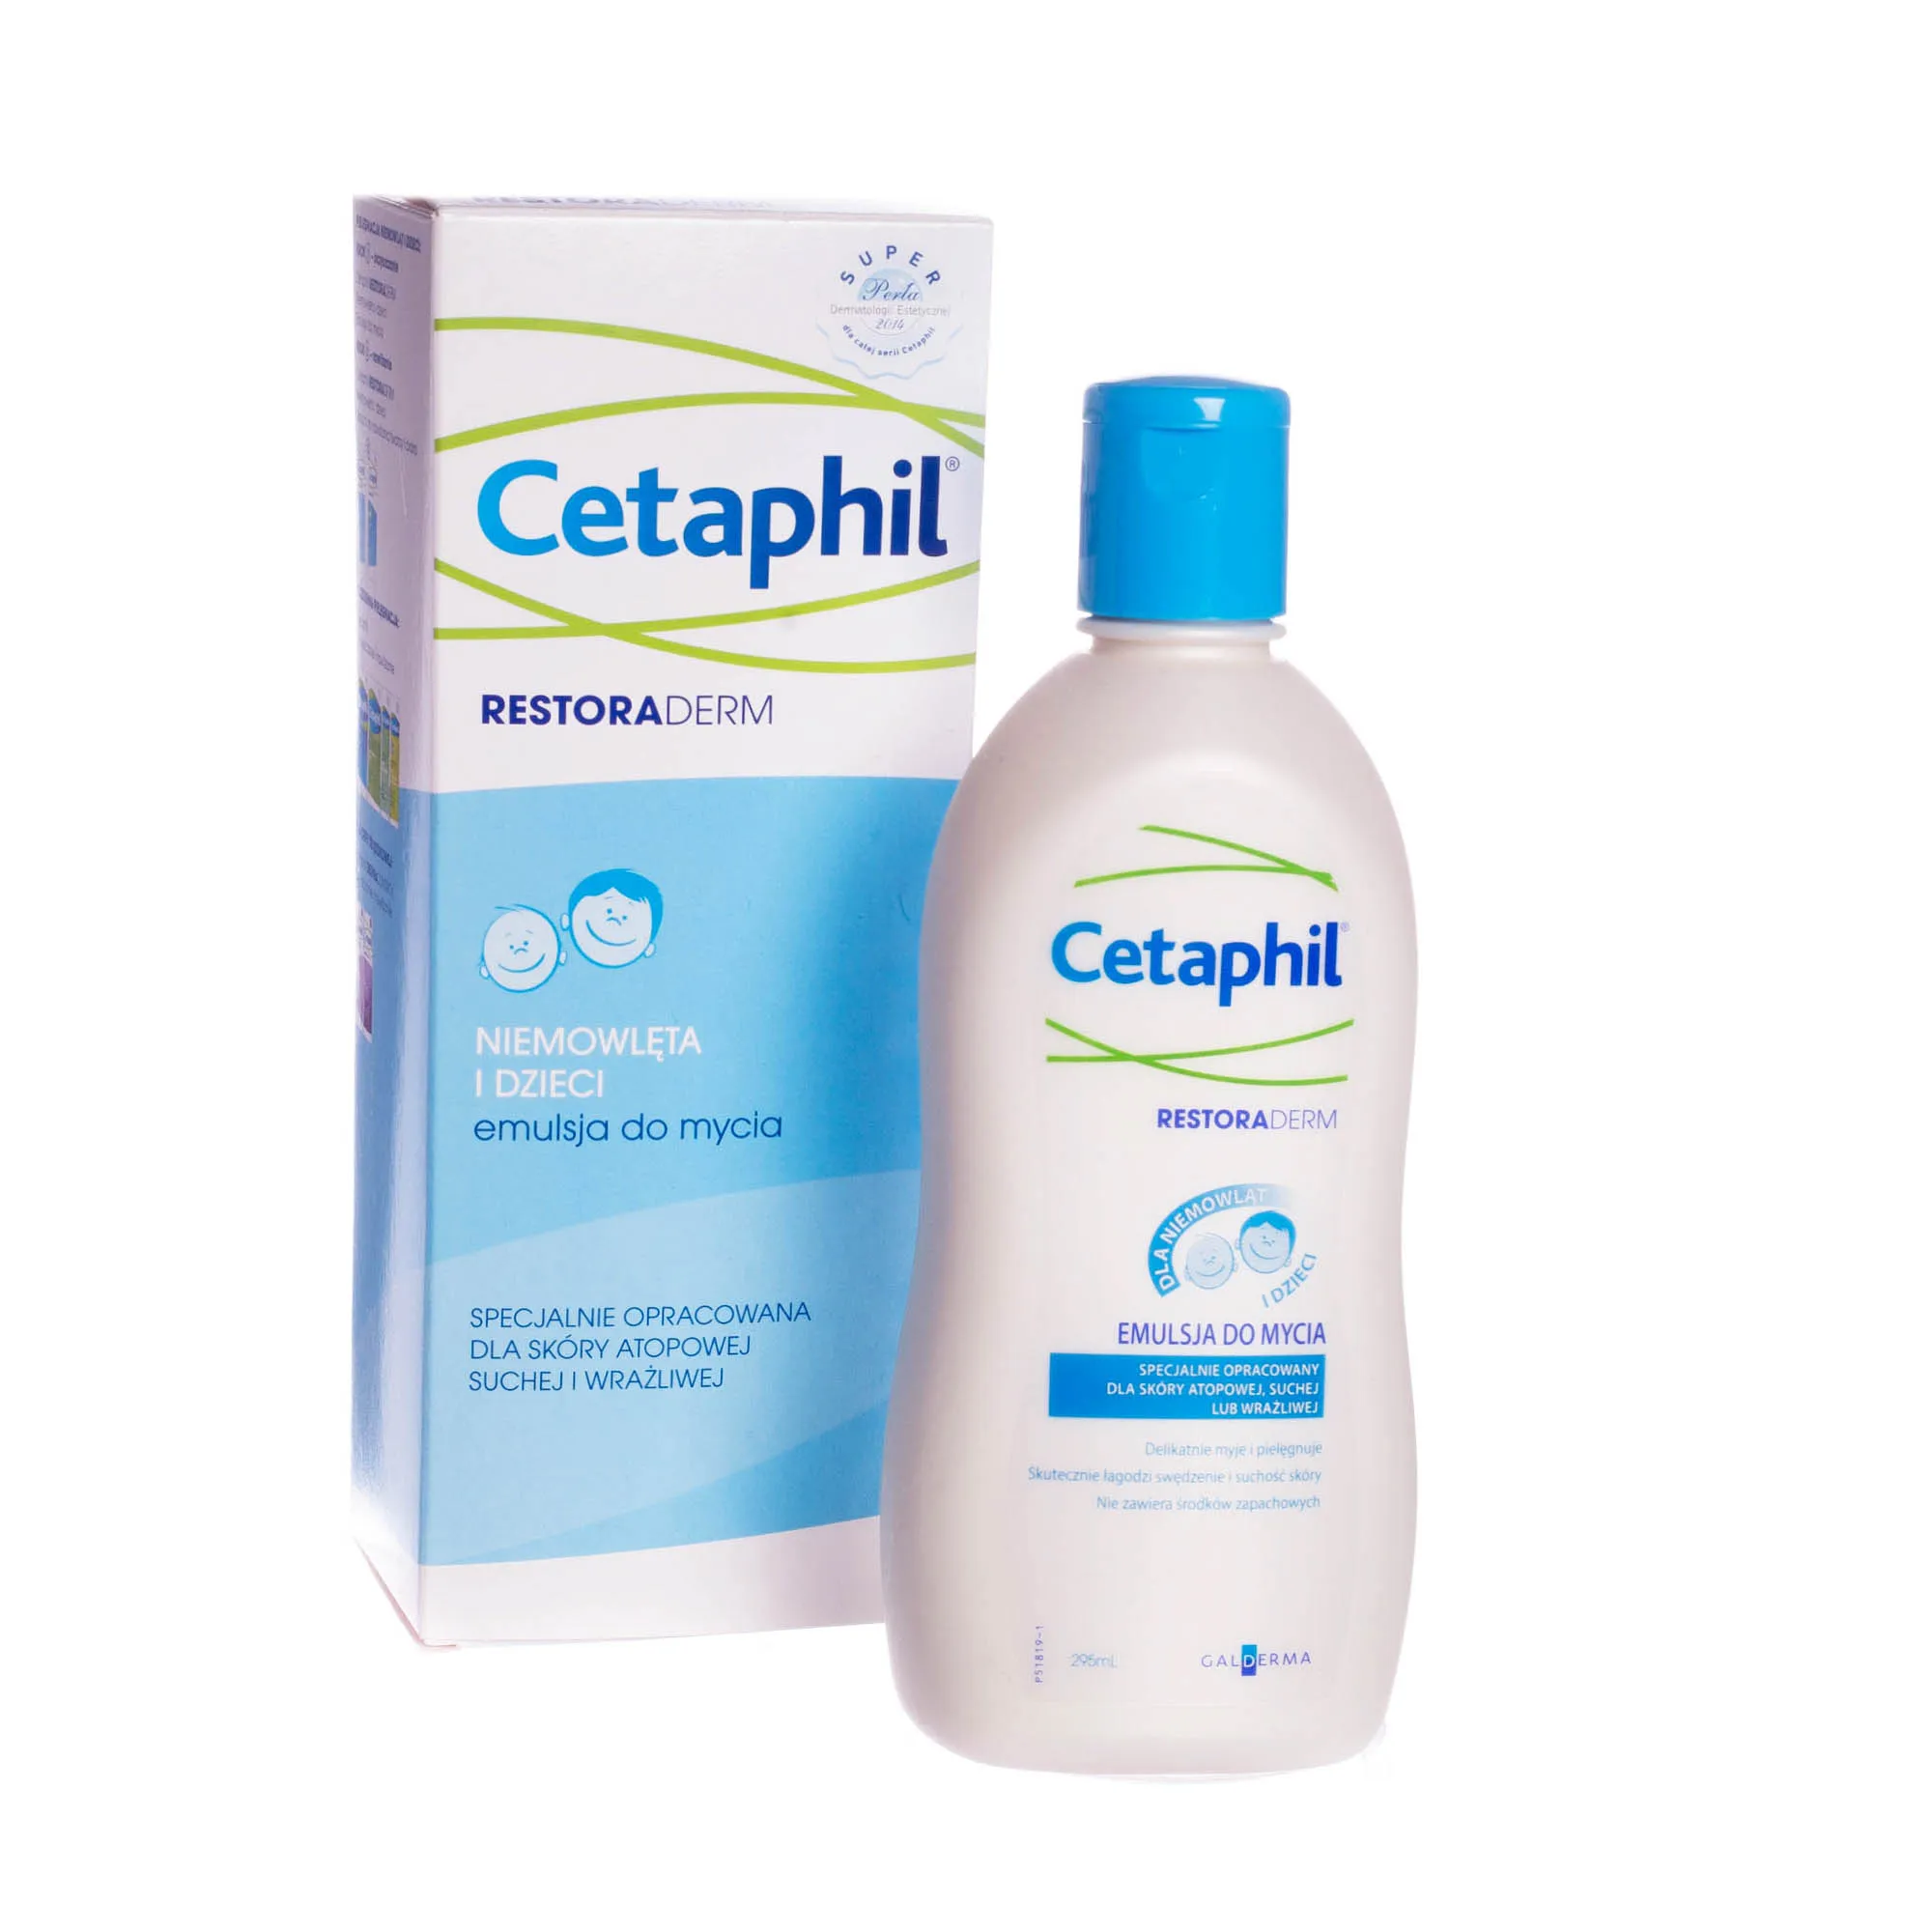 Cetaphil Restoraderm, niemowlęta i dzieci, emulsja do mycia dla skóry suchej i wrażliwej, 295 ml